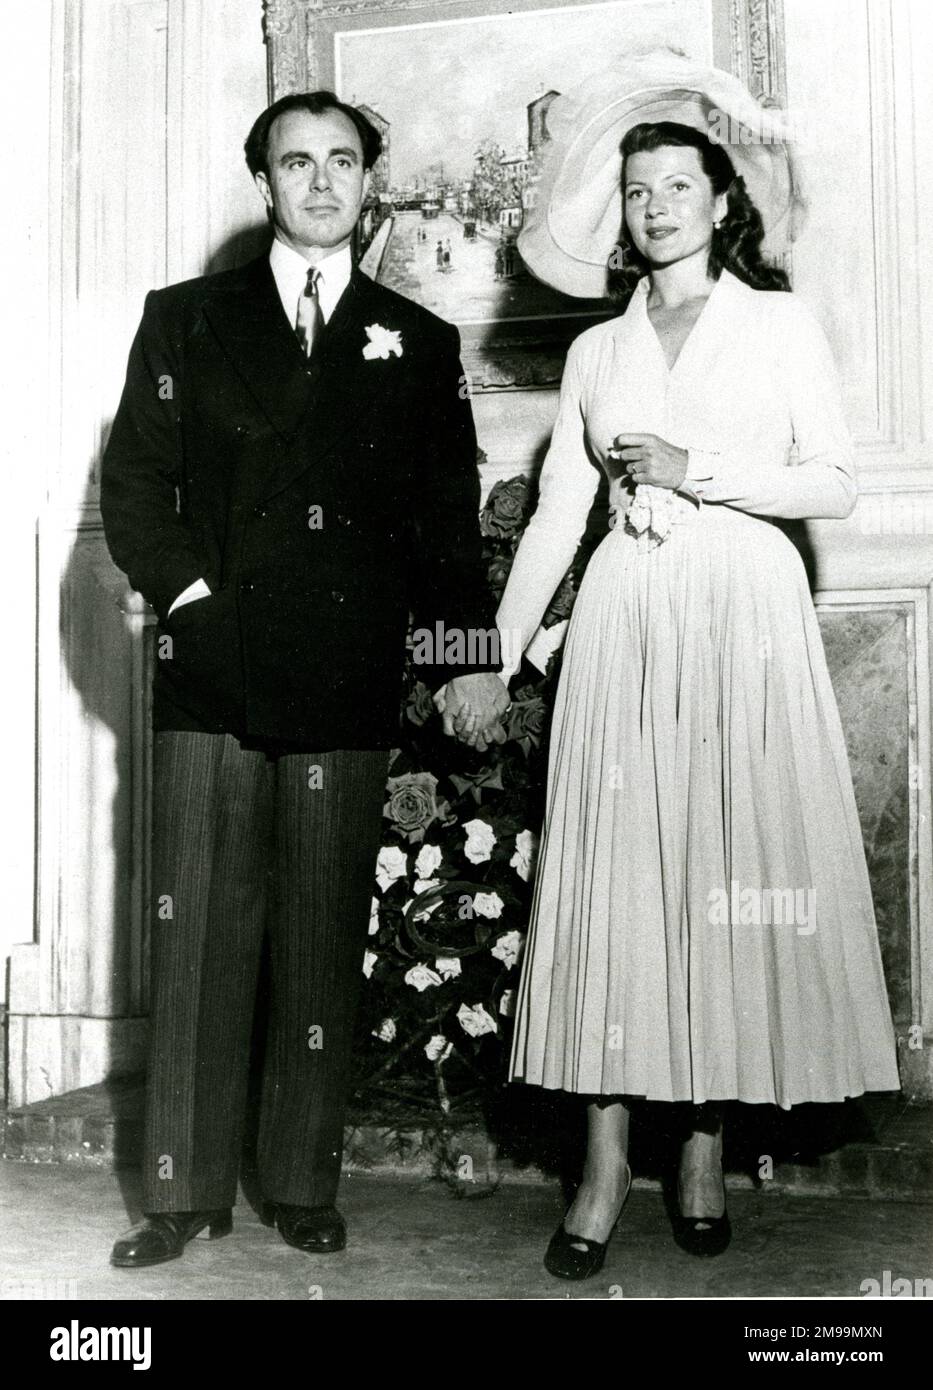 Il Principe Aly Khan (Principe Ali Salman Aga Khan) e Rita Hayworth, attrice e ballerina americana, dopo le loro nozze nel maggio 1949. Foto Stock